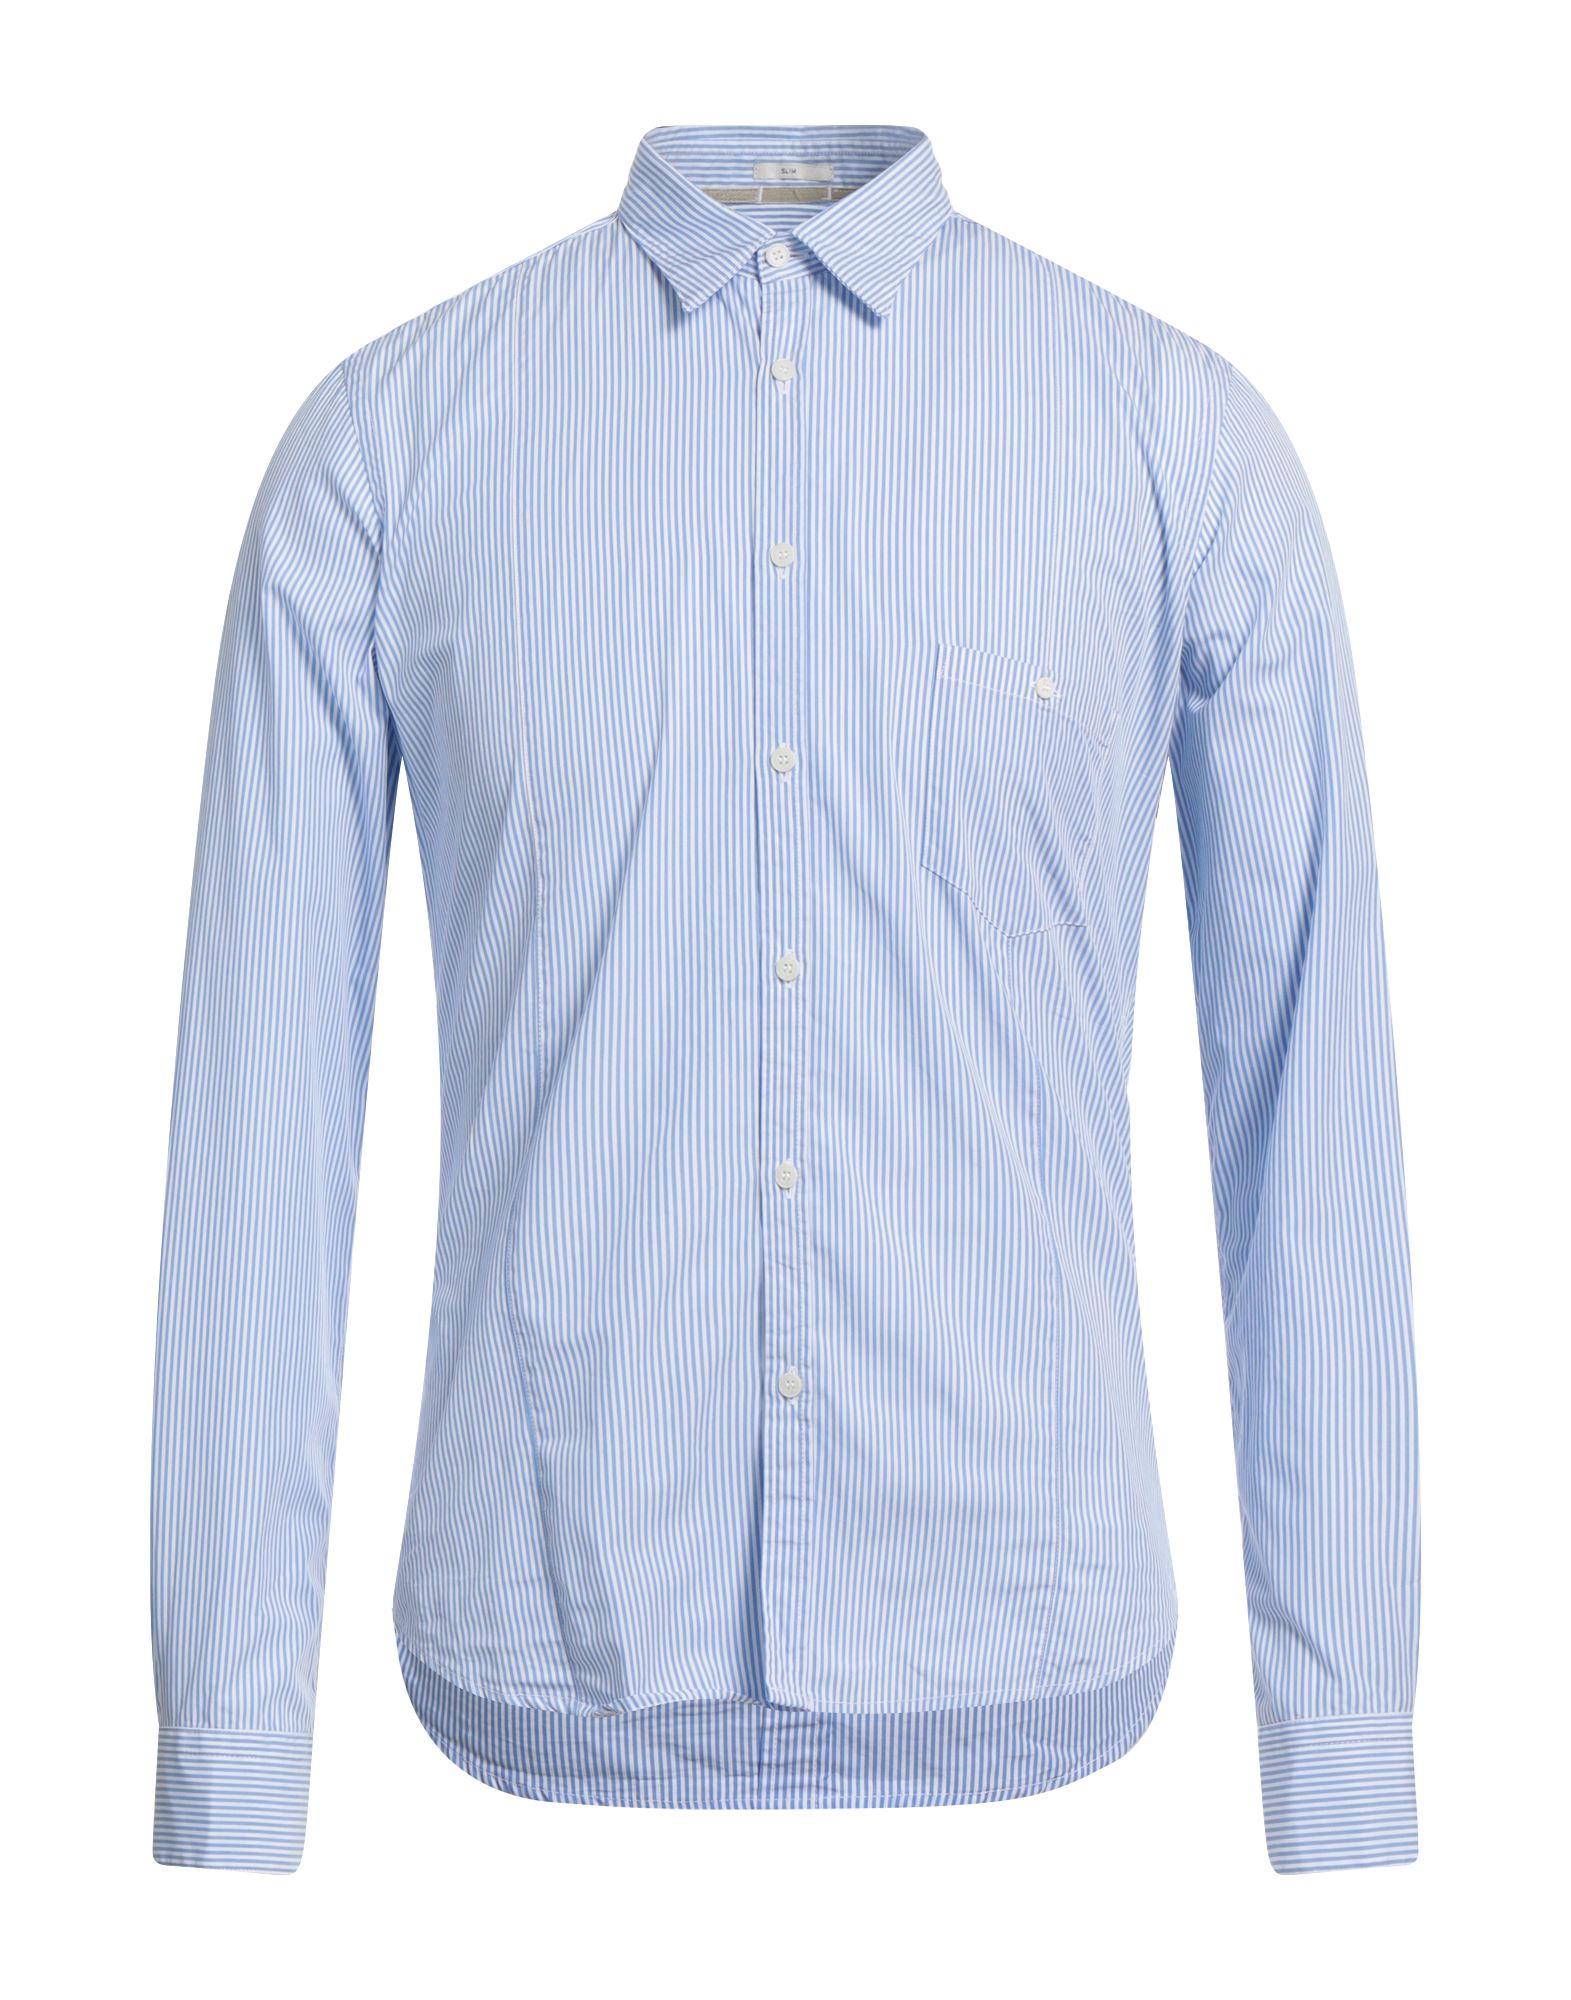 Himon's Man Shirt Sky Blue Size 17 ½ Cotton